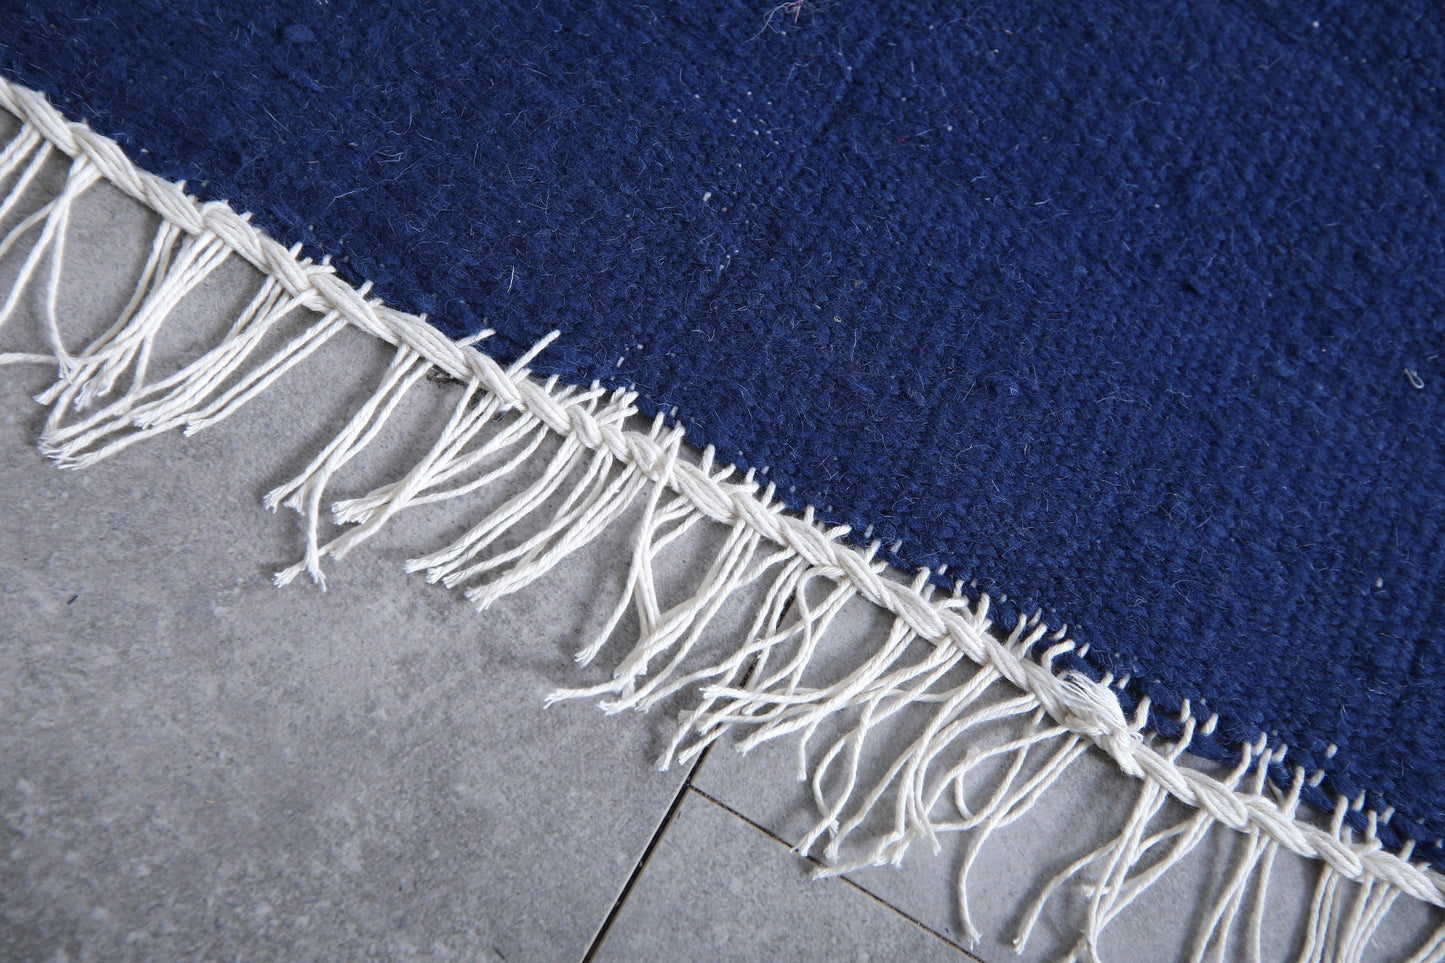 Flat Woven Moroccan rug Blue - Berber beige kilim - Custom Rug